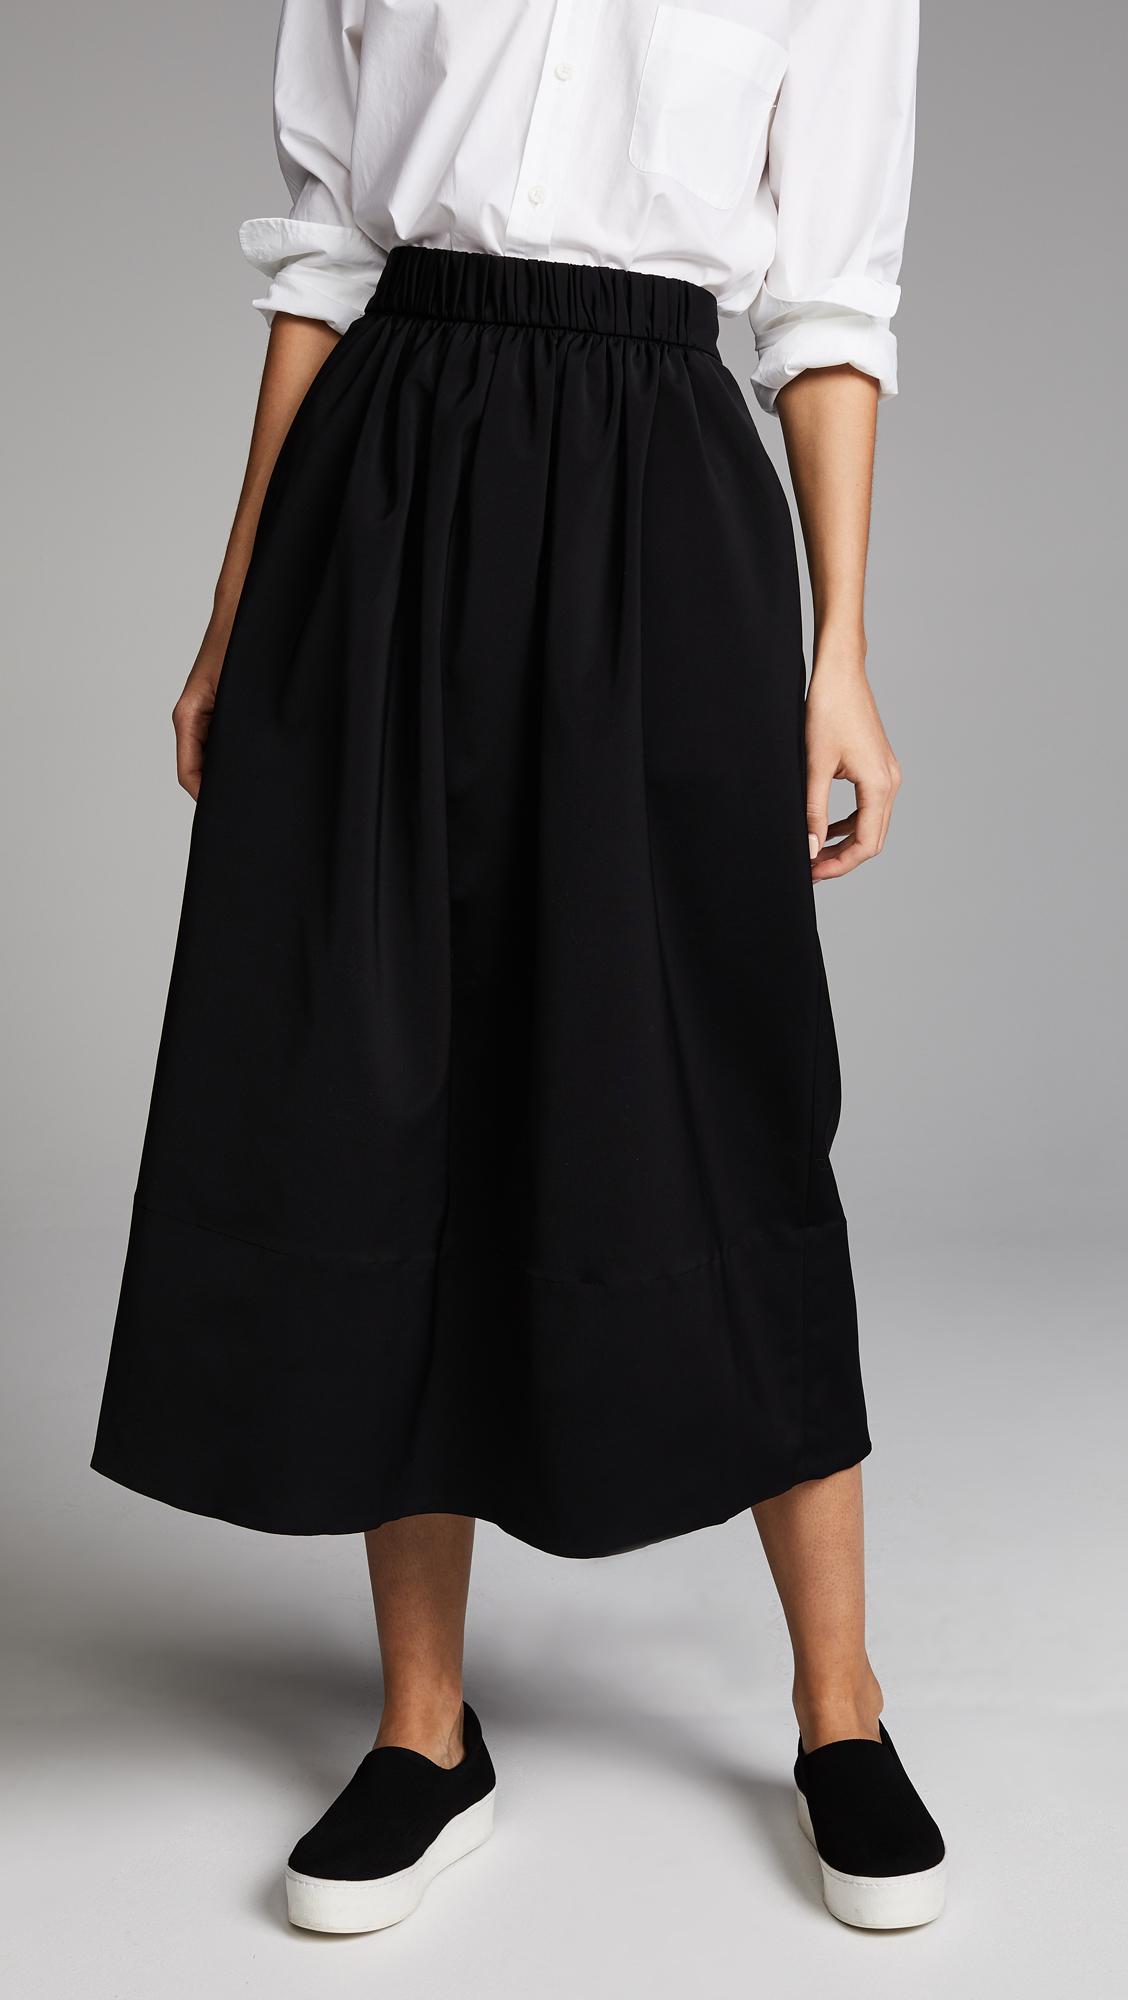 Tibi Synthetic Smocked Waistband Full Skirt in Black - Lyst